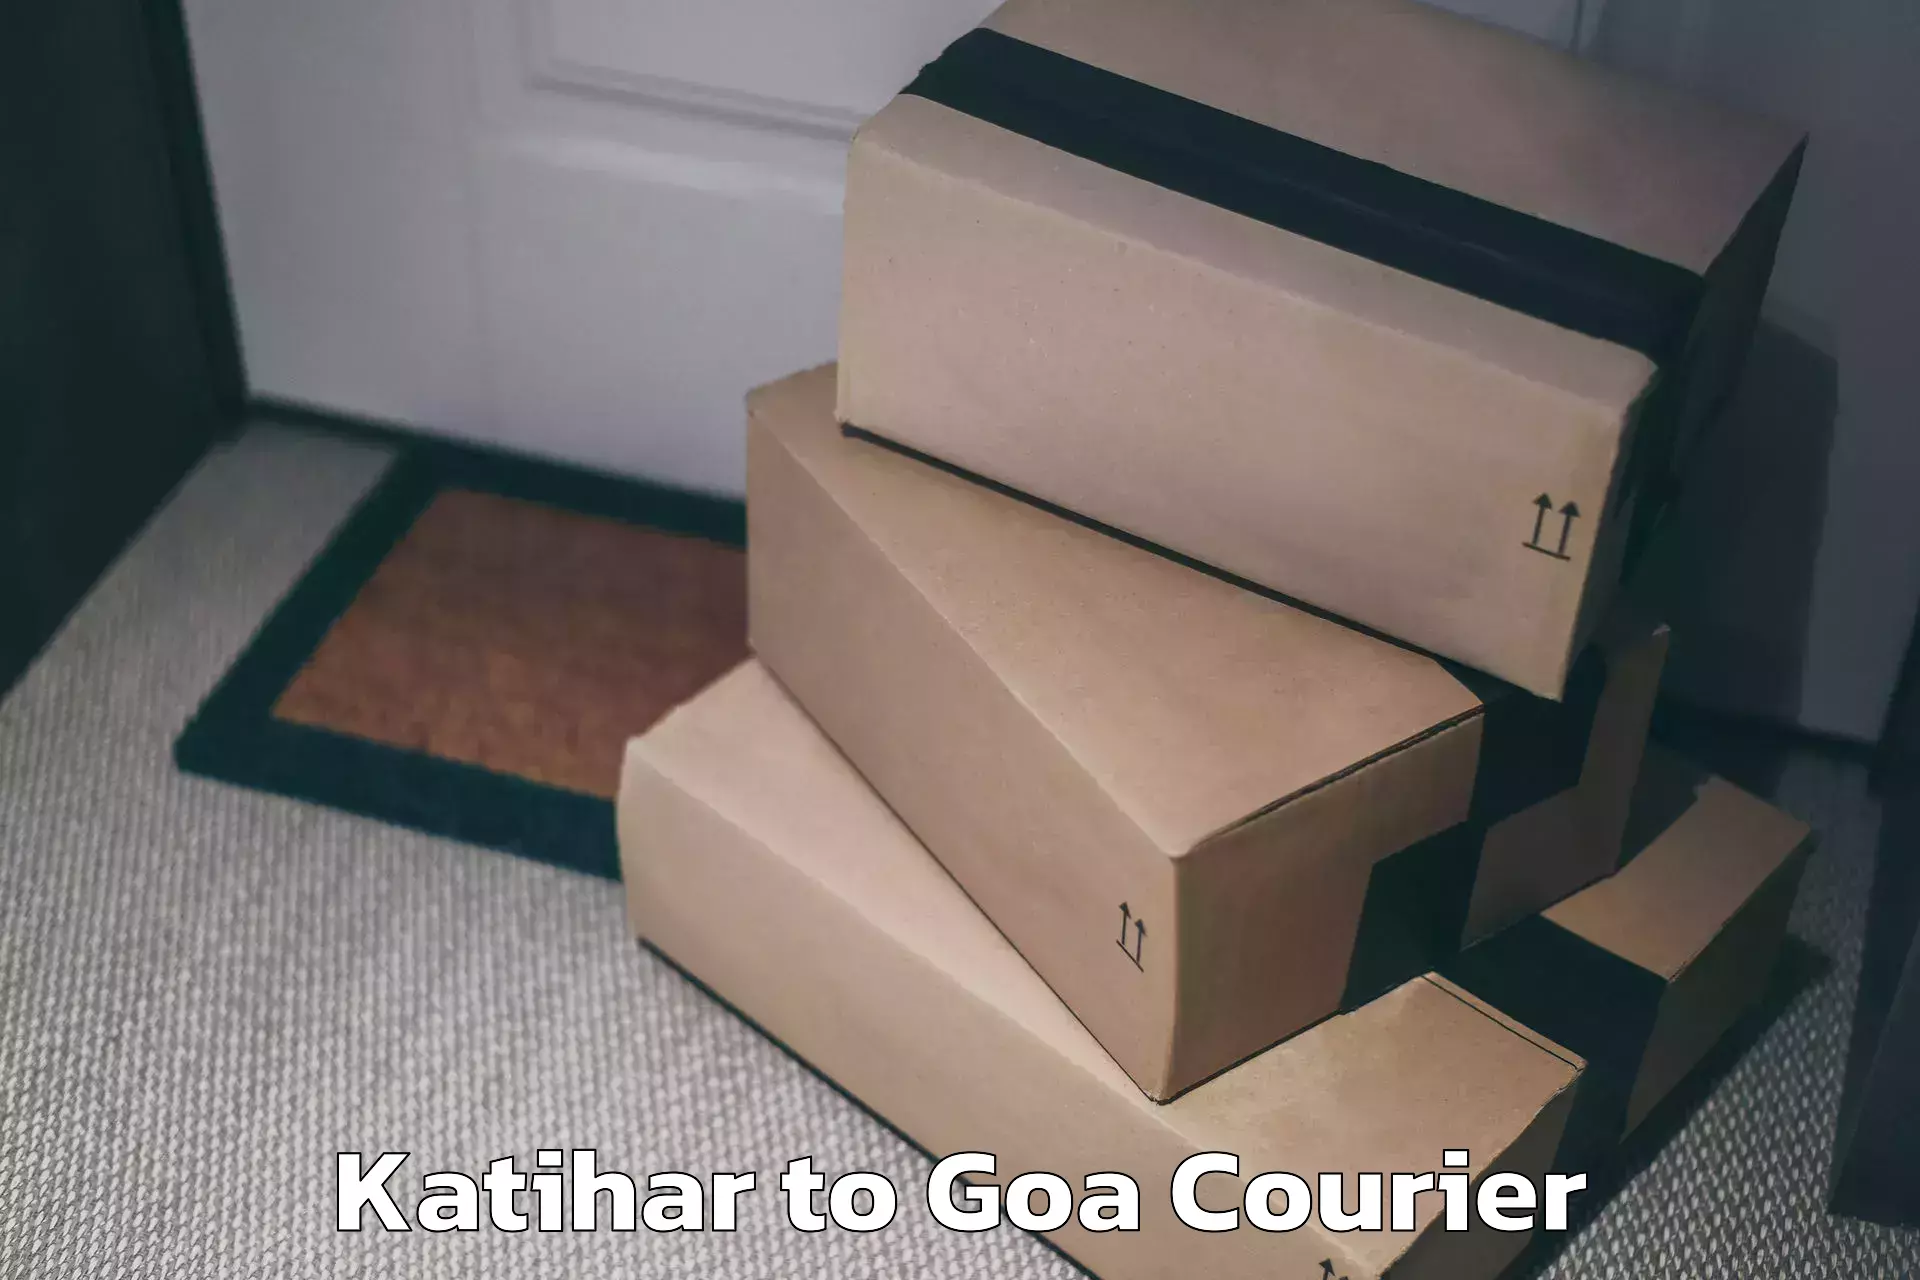 Luggage forwarding service Katihar to Goa University